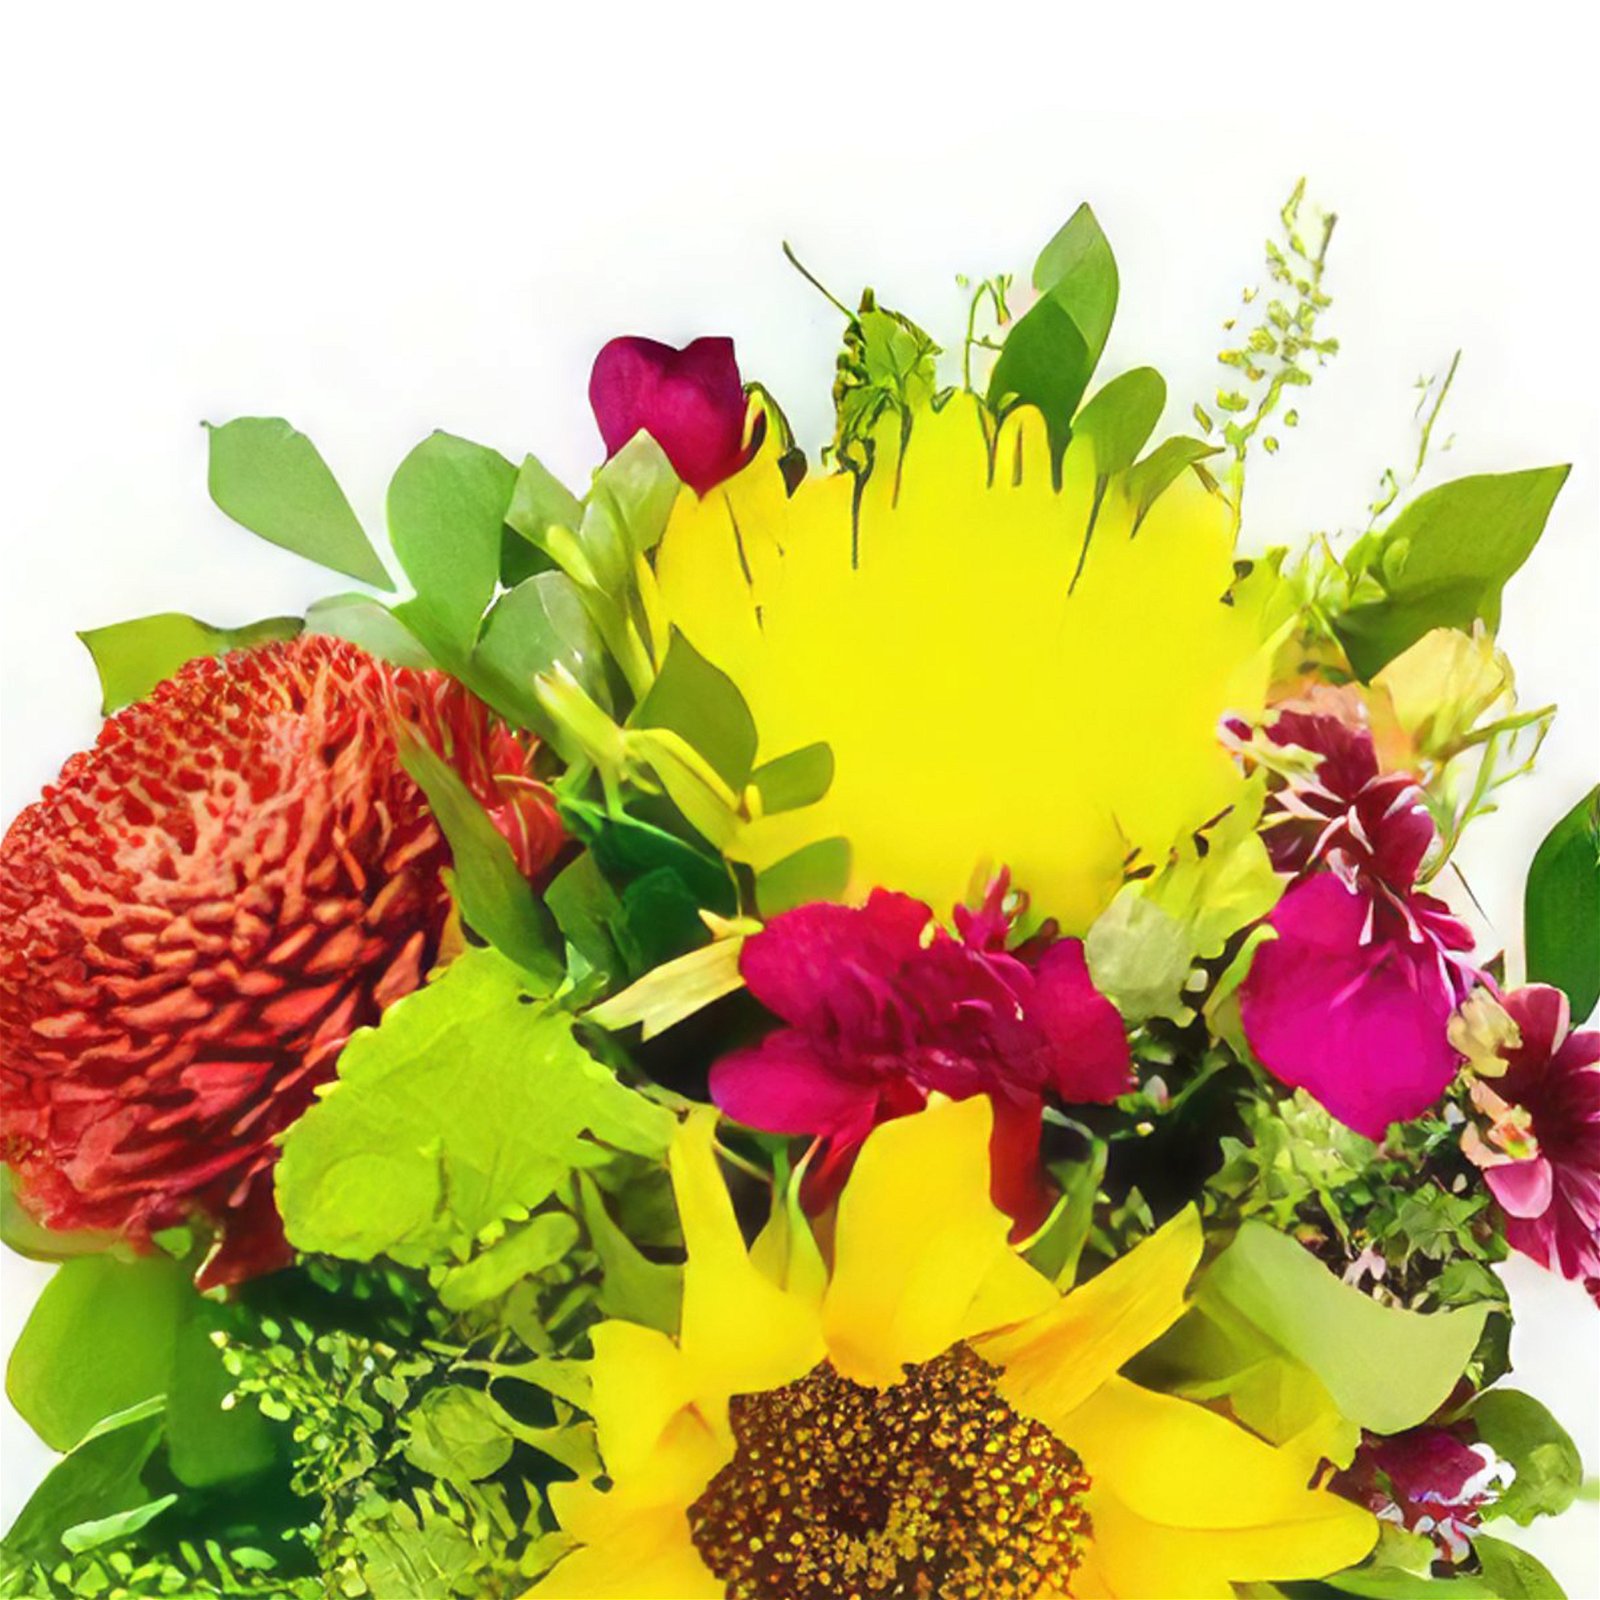 Cespedes Blumen Florist- Frühlingsliebe Bouquet/Blumenschmuck